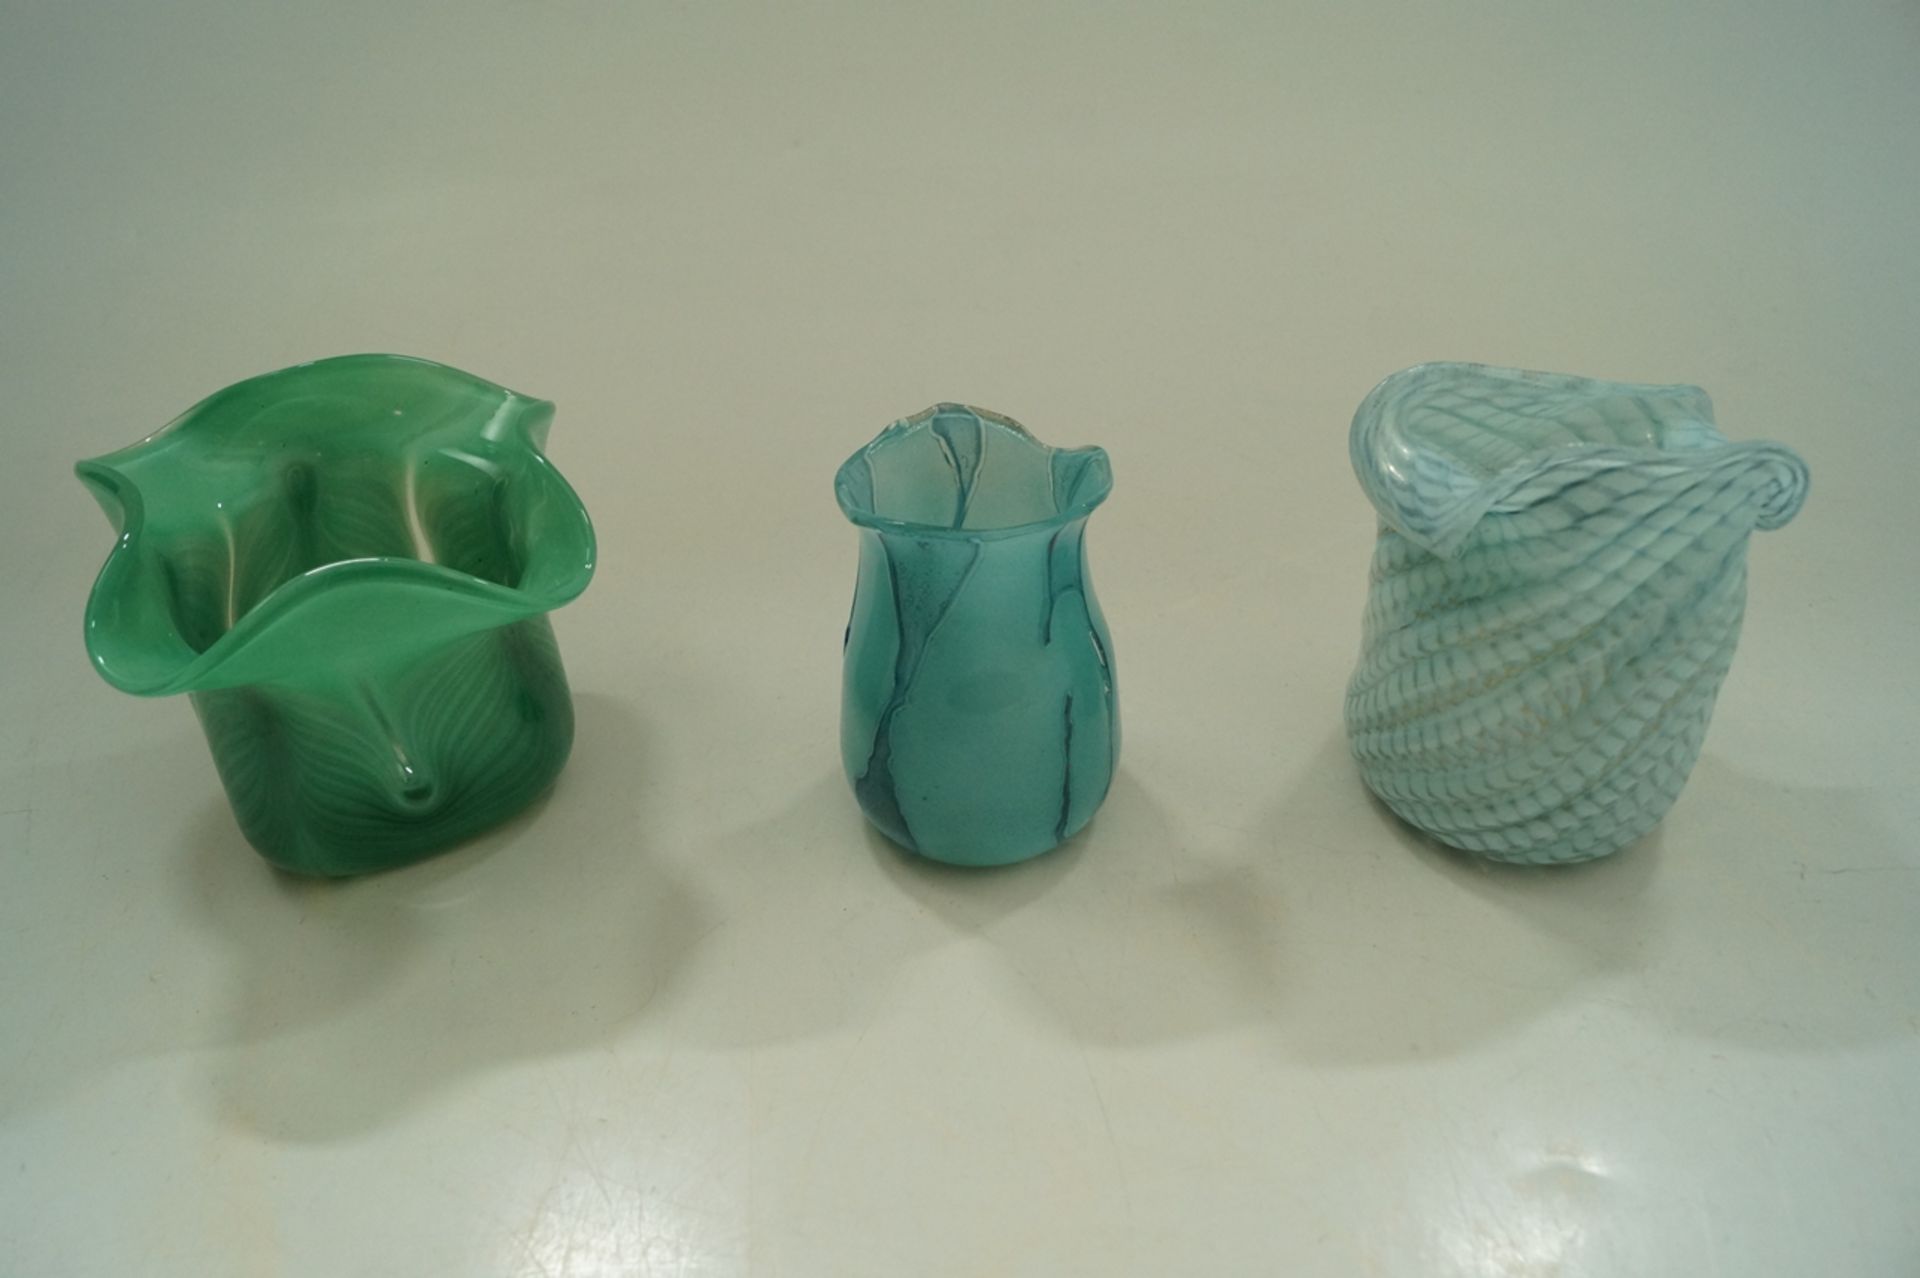 Konvolut aus 4 Studio-Glas Vasen sowie einer Schale; 4x Erwin Eisch sowie die Kleinste Vase von Ste - Bild 3 aus 3